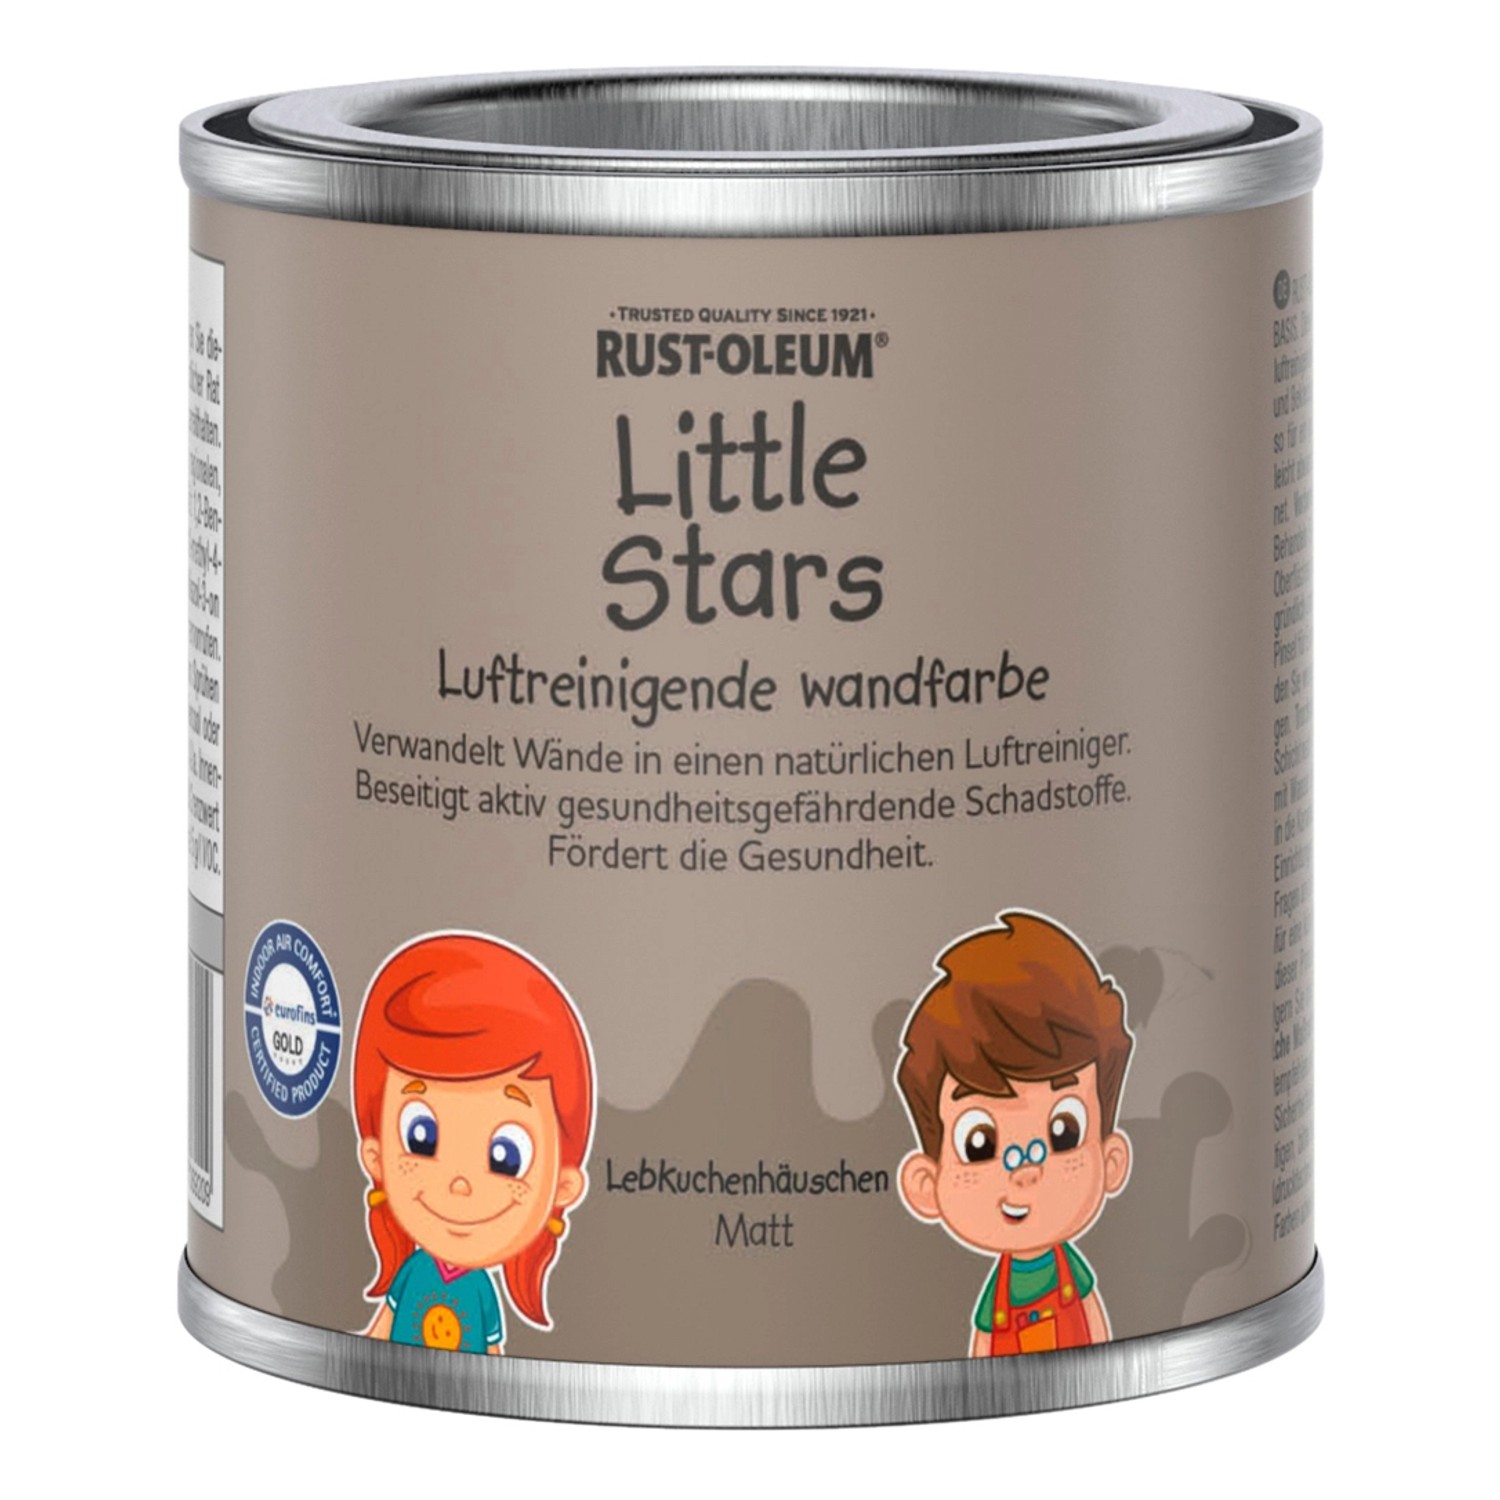 Rust-Oleum Little Stars Luftreinigende Wandfarbe Lebkuchenhäuschen 125 ml von Rust-Oleum